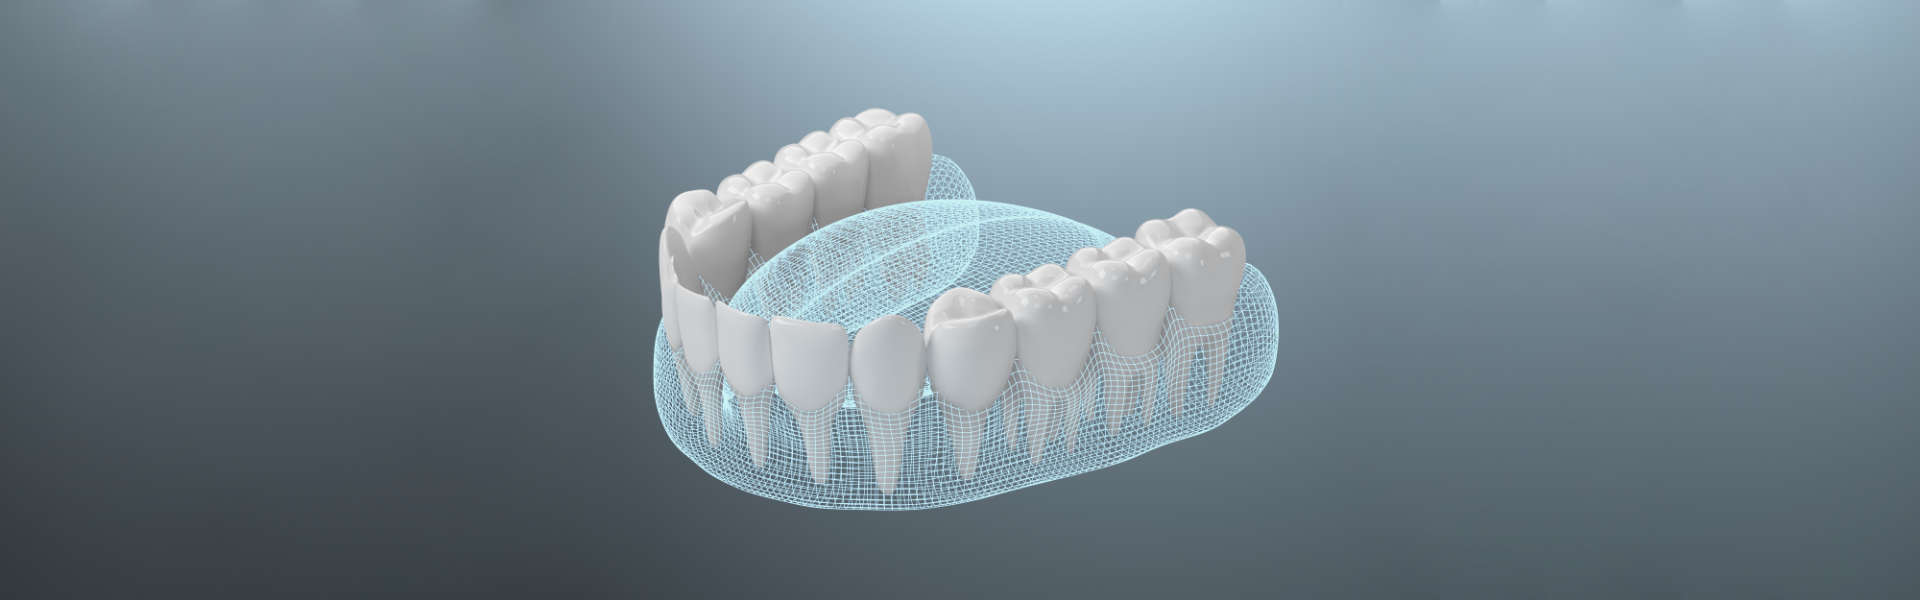 Healthy teeth 3d rendering. Computer digital drawing.